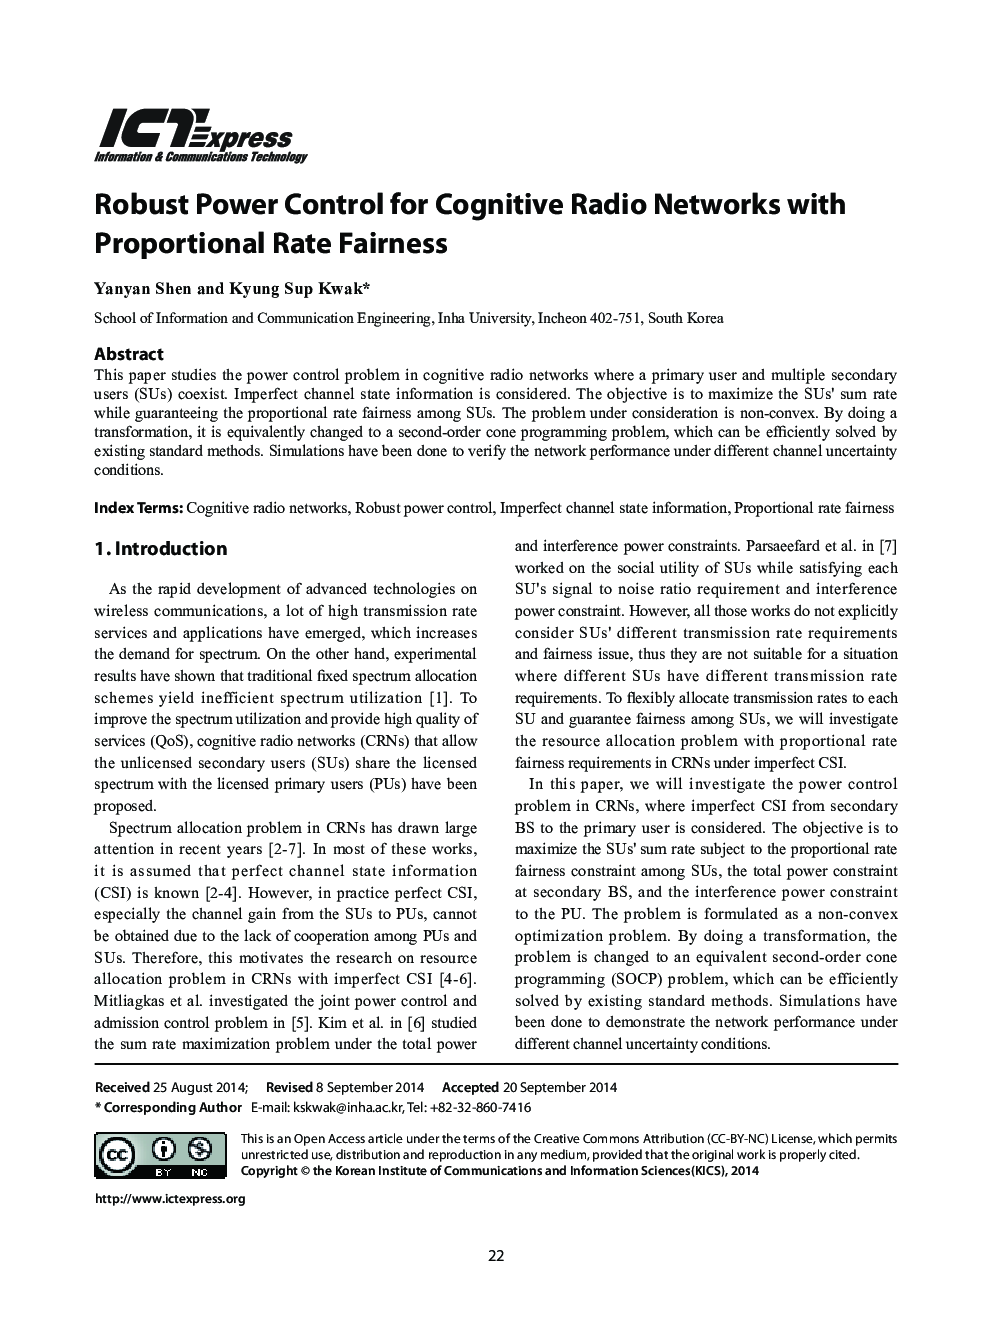 کنترل قدرت قوی برای شبکه های رادیویی شناختی با عادلانه بودن نسبت نرمال 